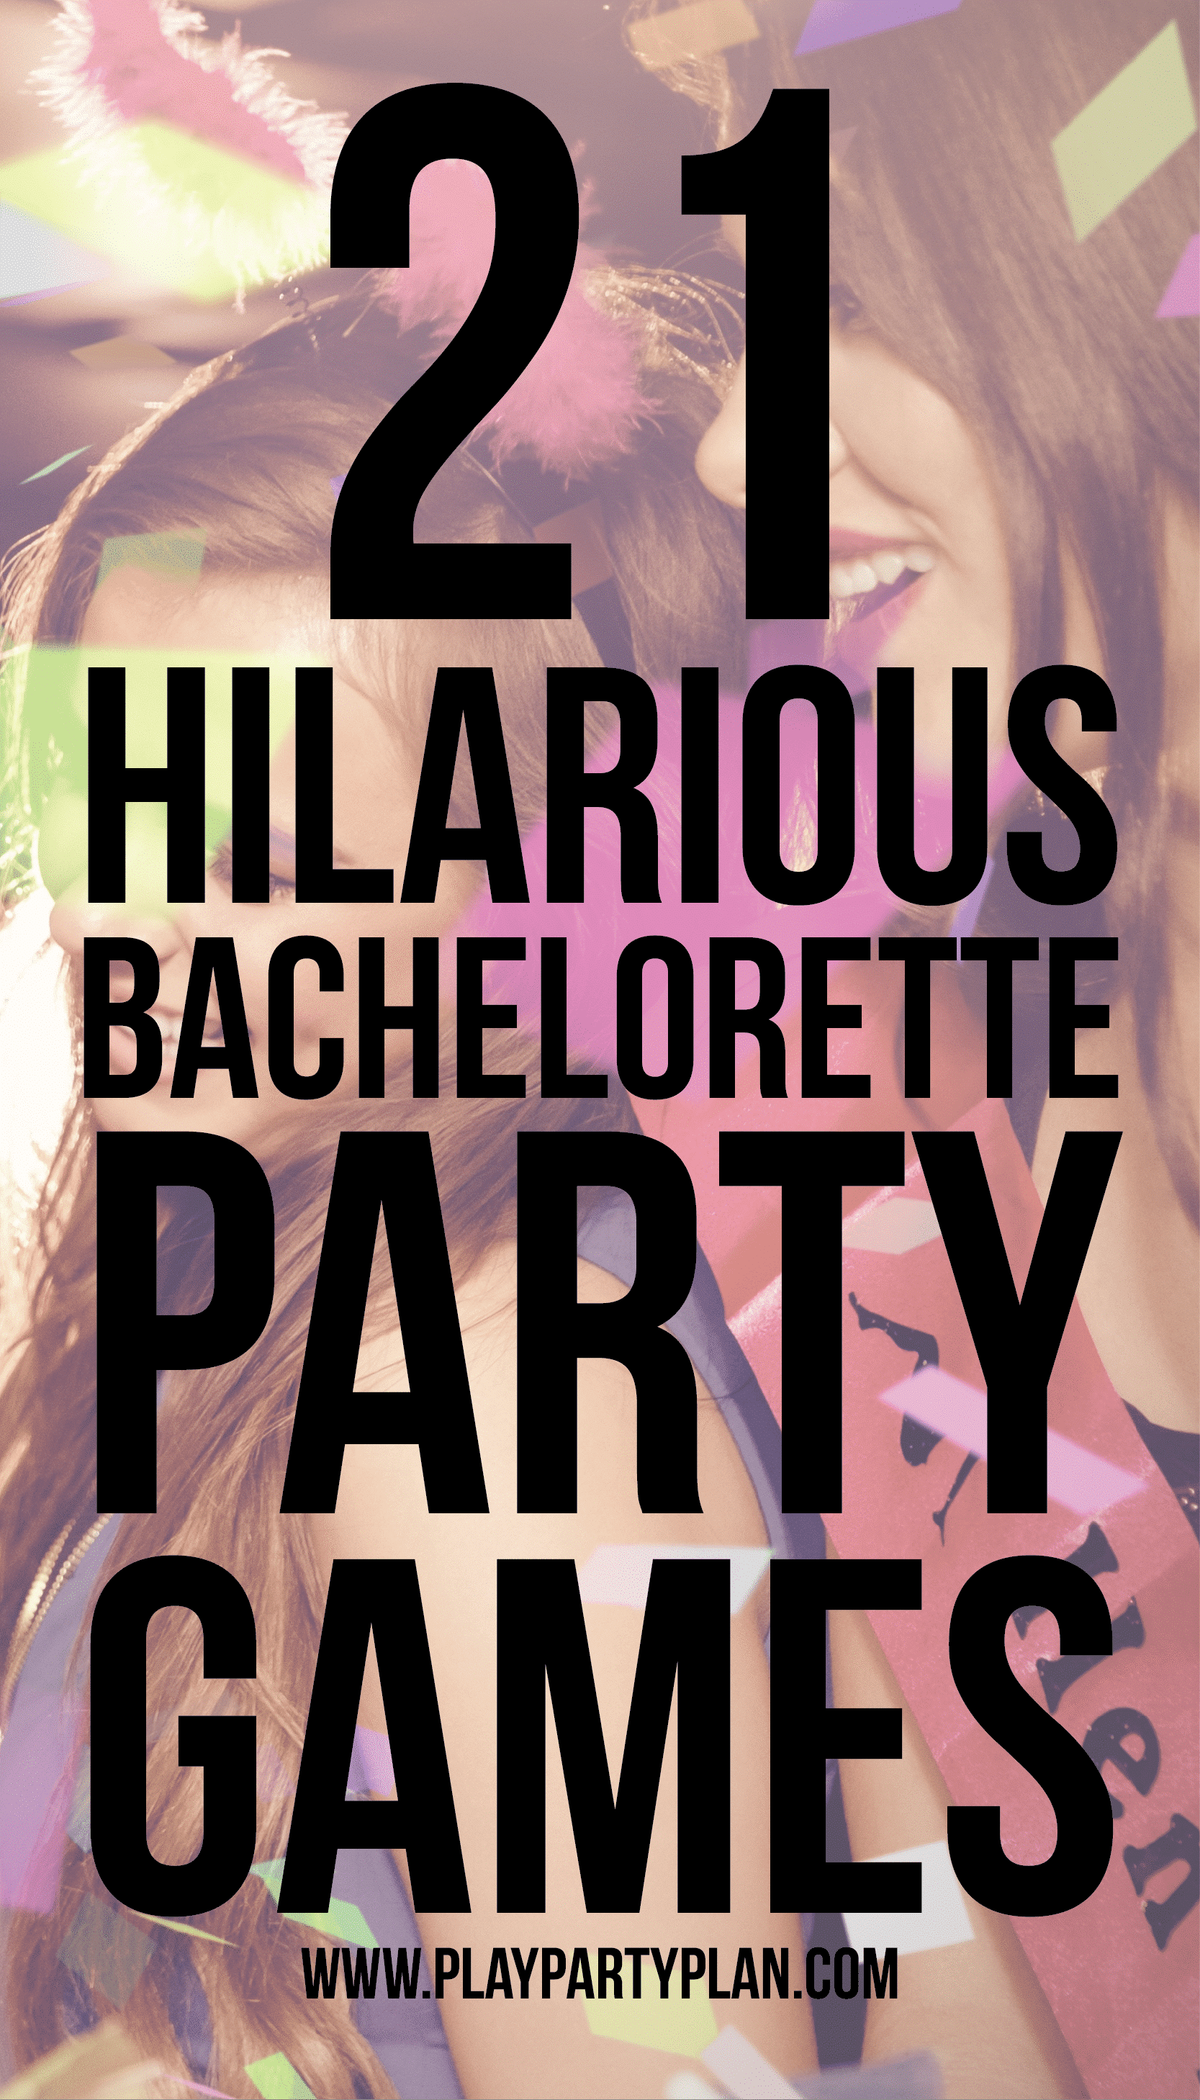 Τα παιχνίδια πάρτι Bachelorette είναι αρκετά καθαρά για να παίξει ο καθένας